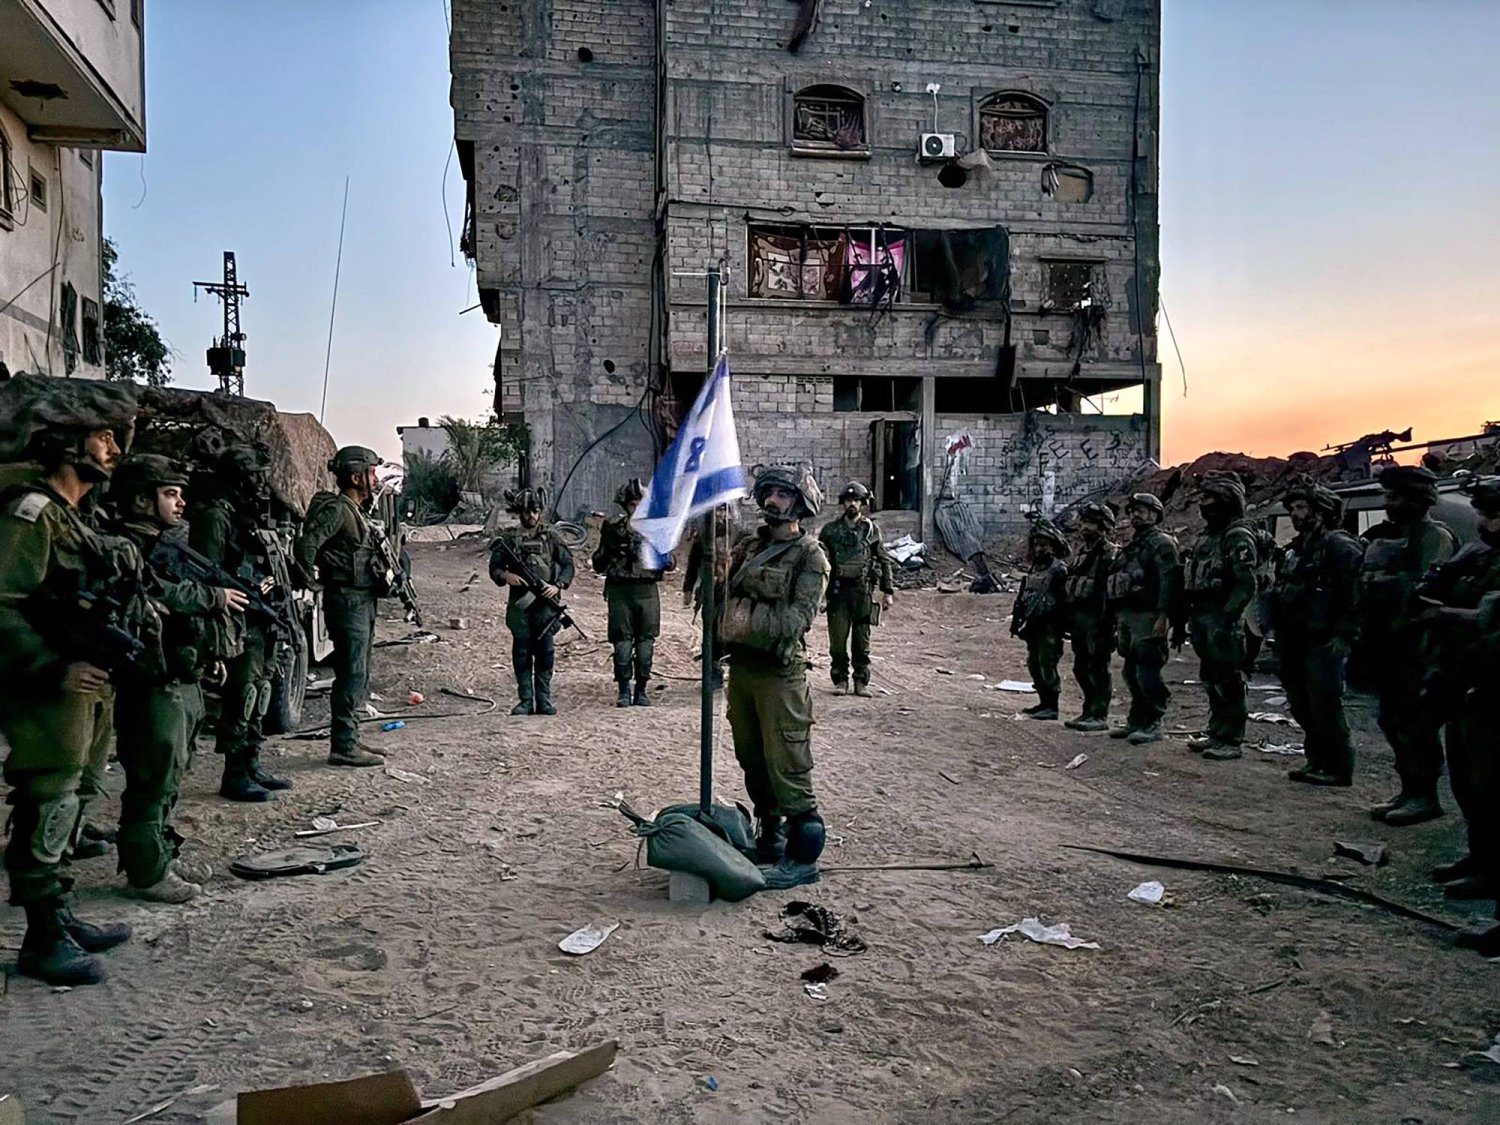  جنود إسرائيليون في قطاع غزة، يحضرون مراسم كجزء من يوم الذكرى الوطني للجنود الذين سقطوا في الحروب وضحايا الهجمات، وسط الصراع المستمر بين إسرائيل وحركة «حماس» في قطاع غزة 13 مايو 2024 (أ.ف.ب)